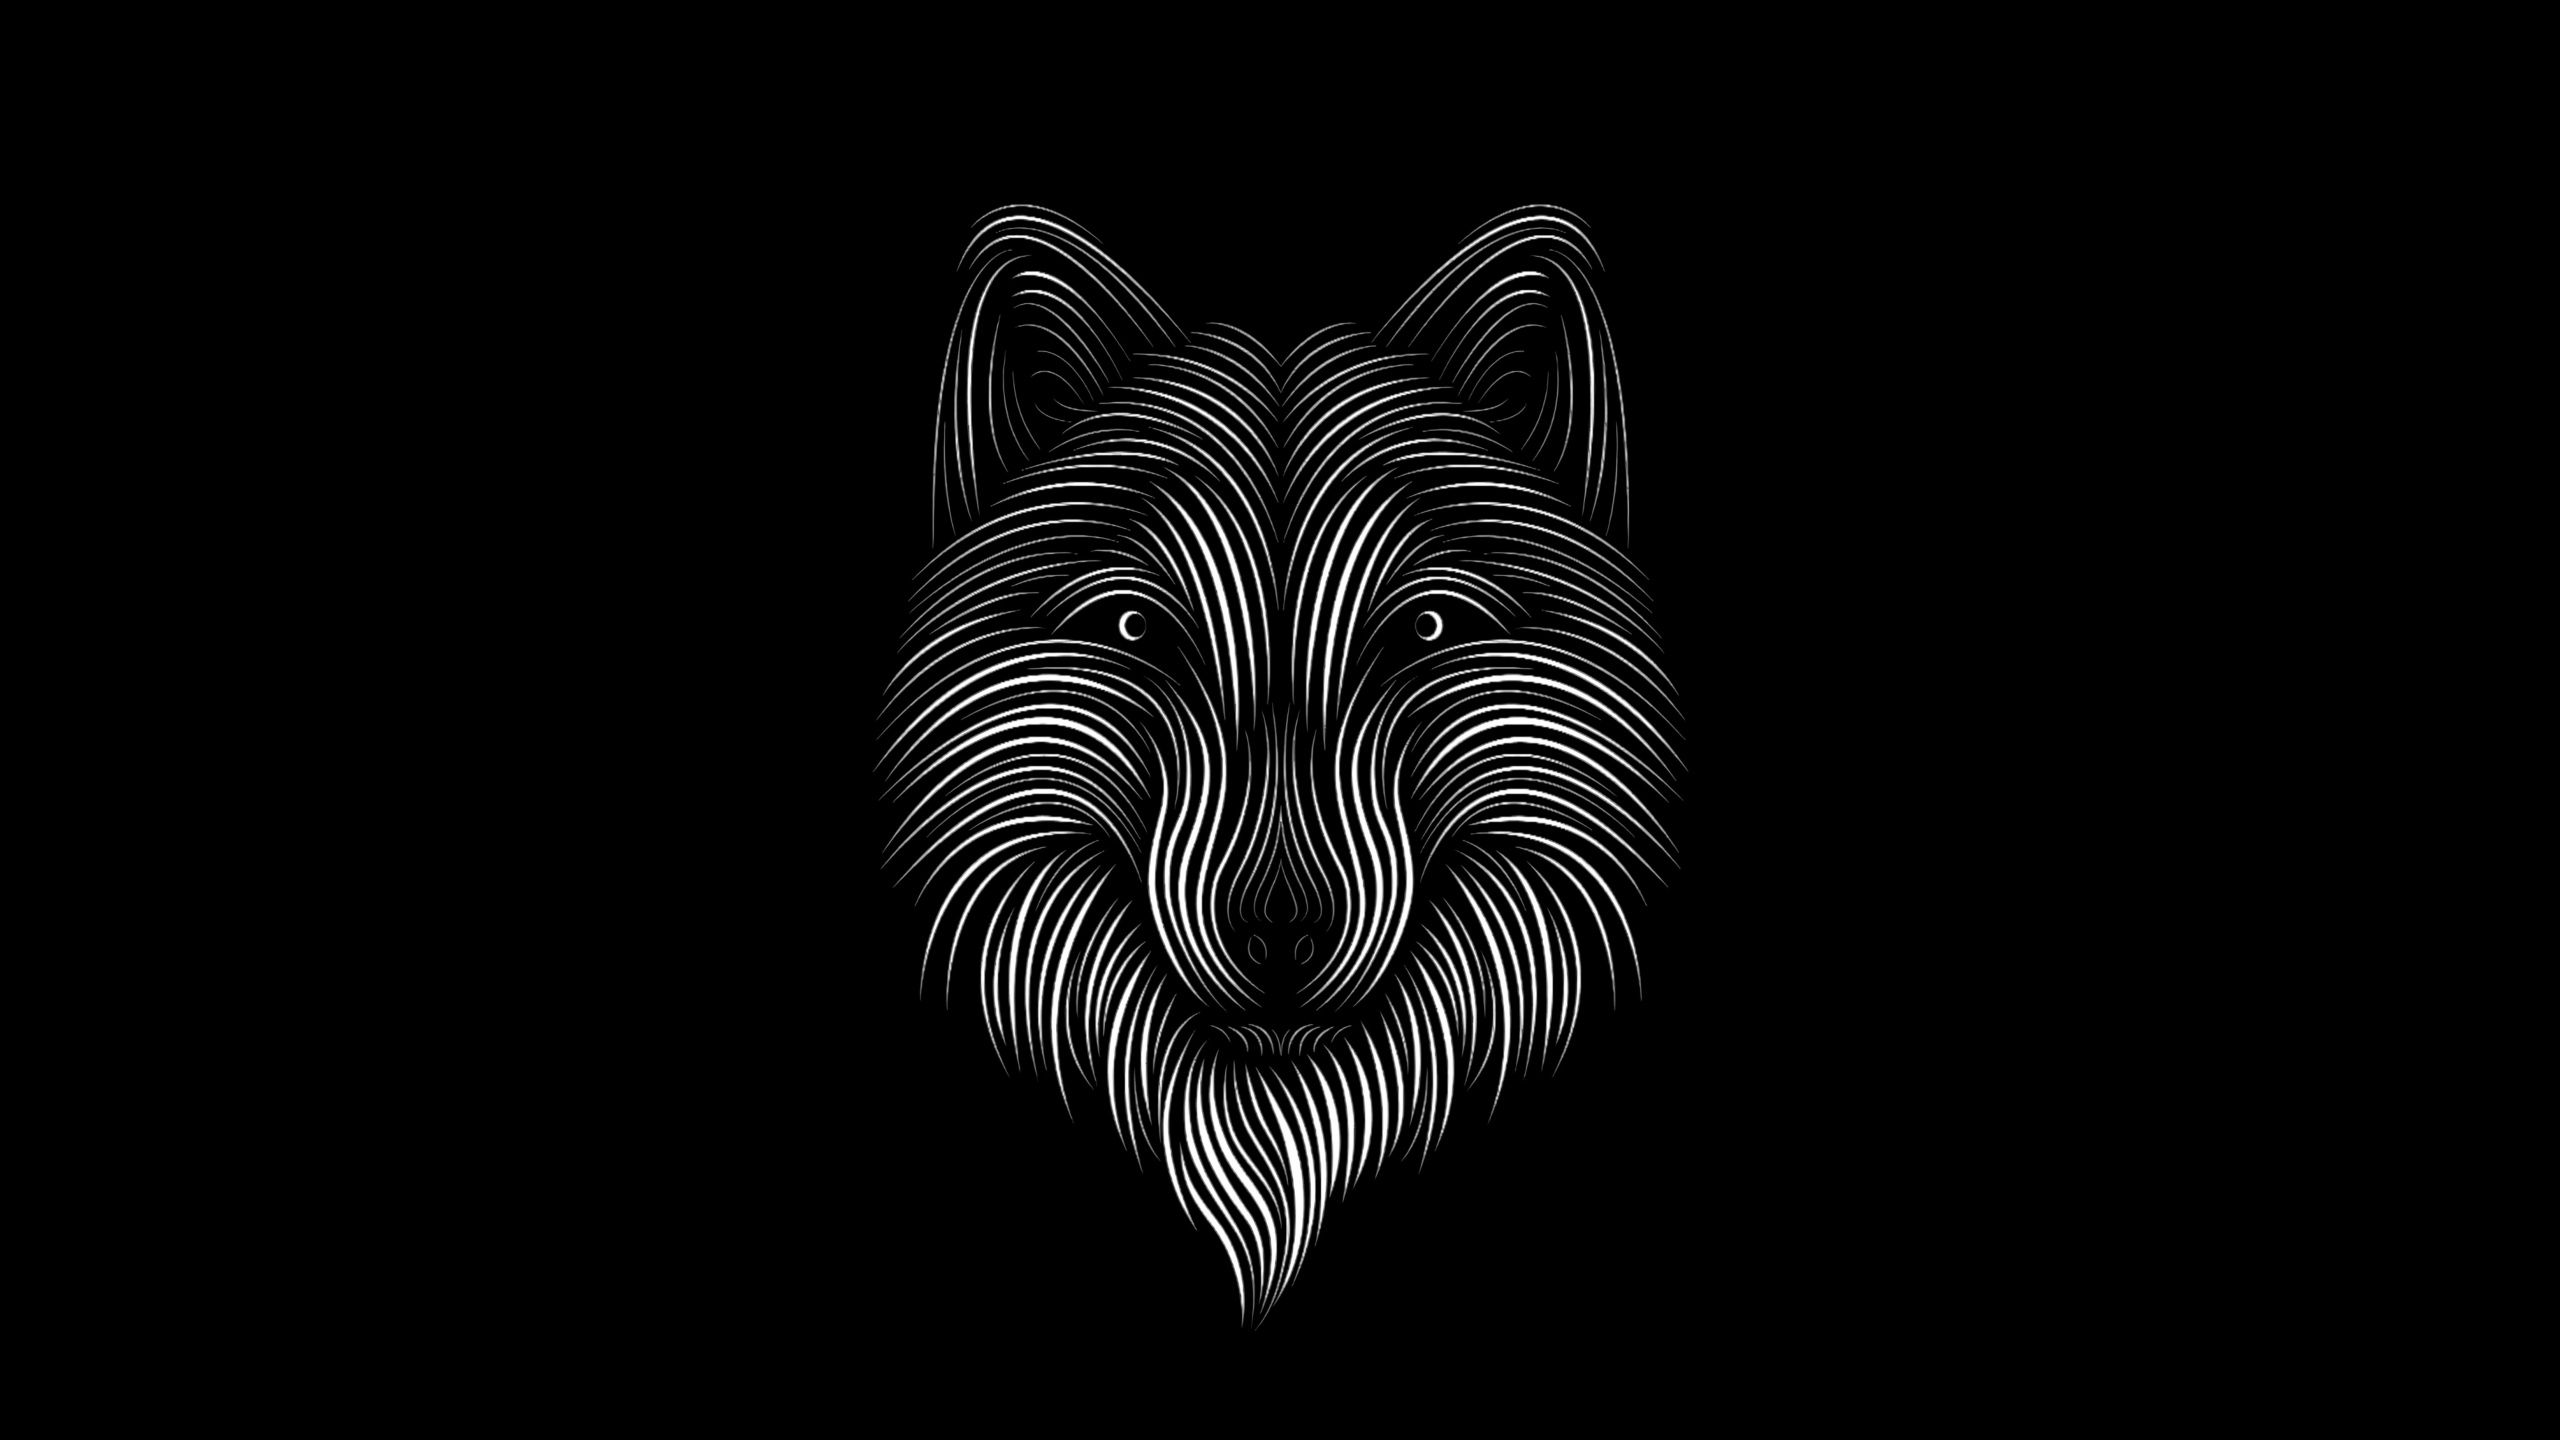 艺术, 野生动物, 对称, 胡须, 黑色和白色的 壁纸 2560x1440 允许